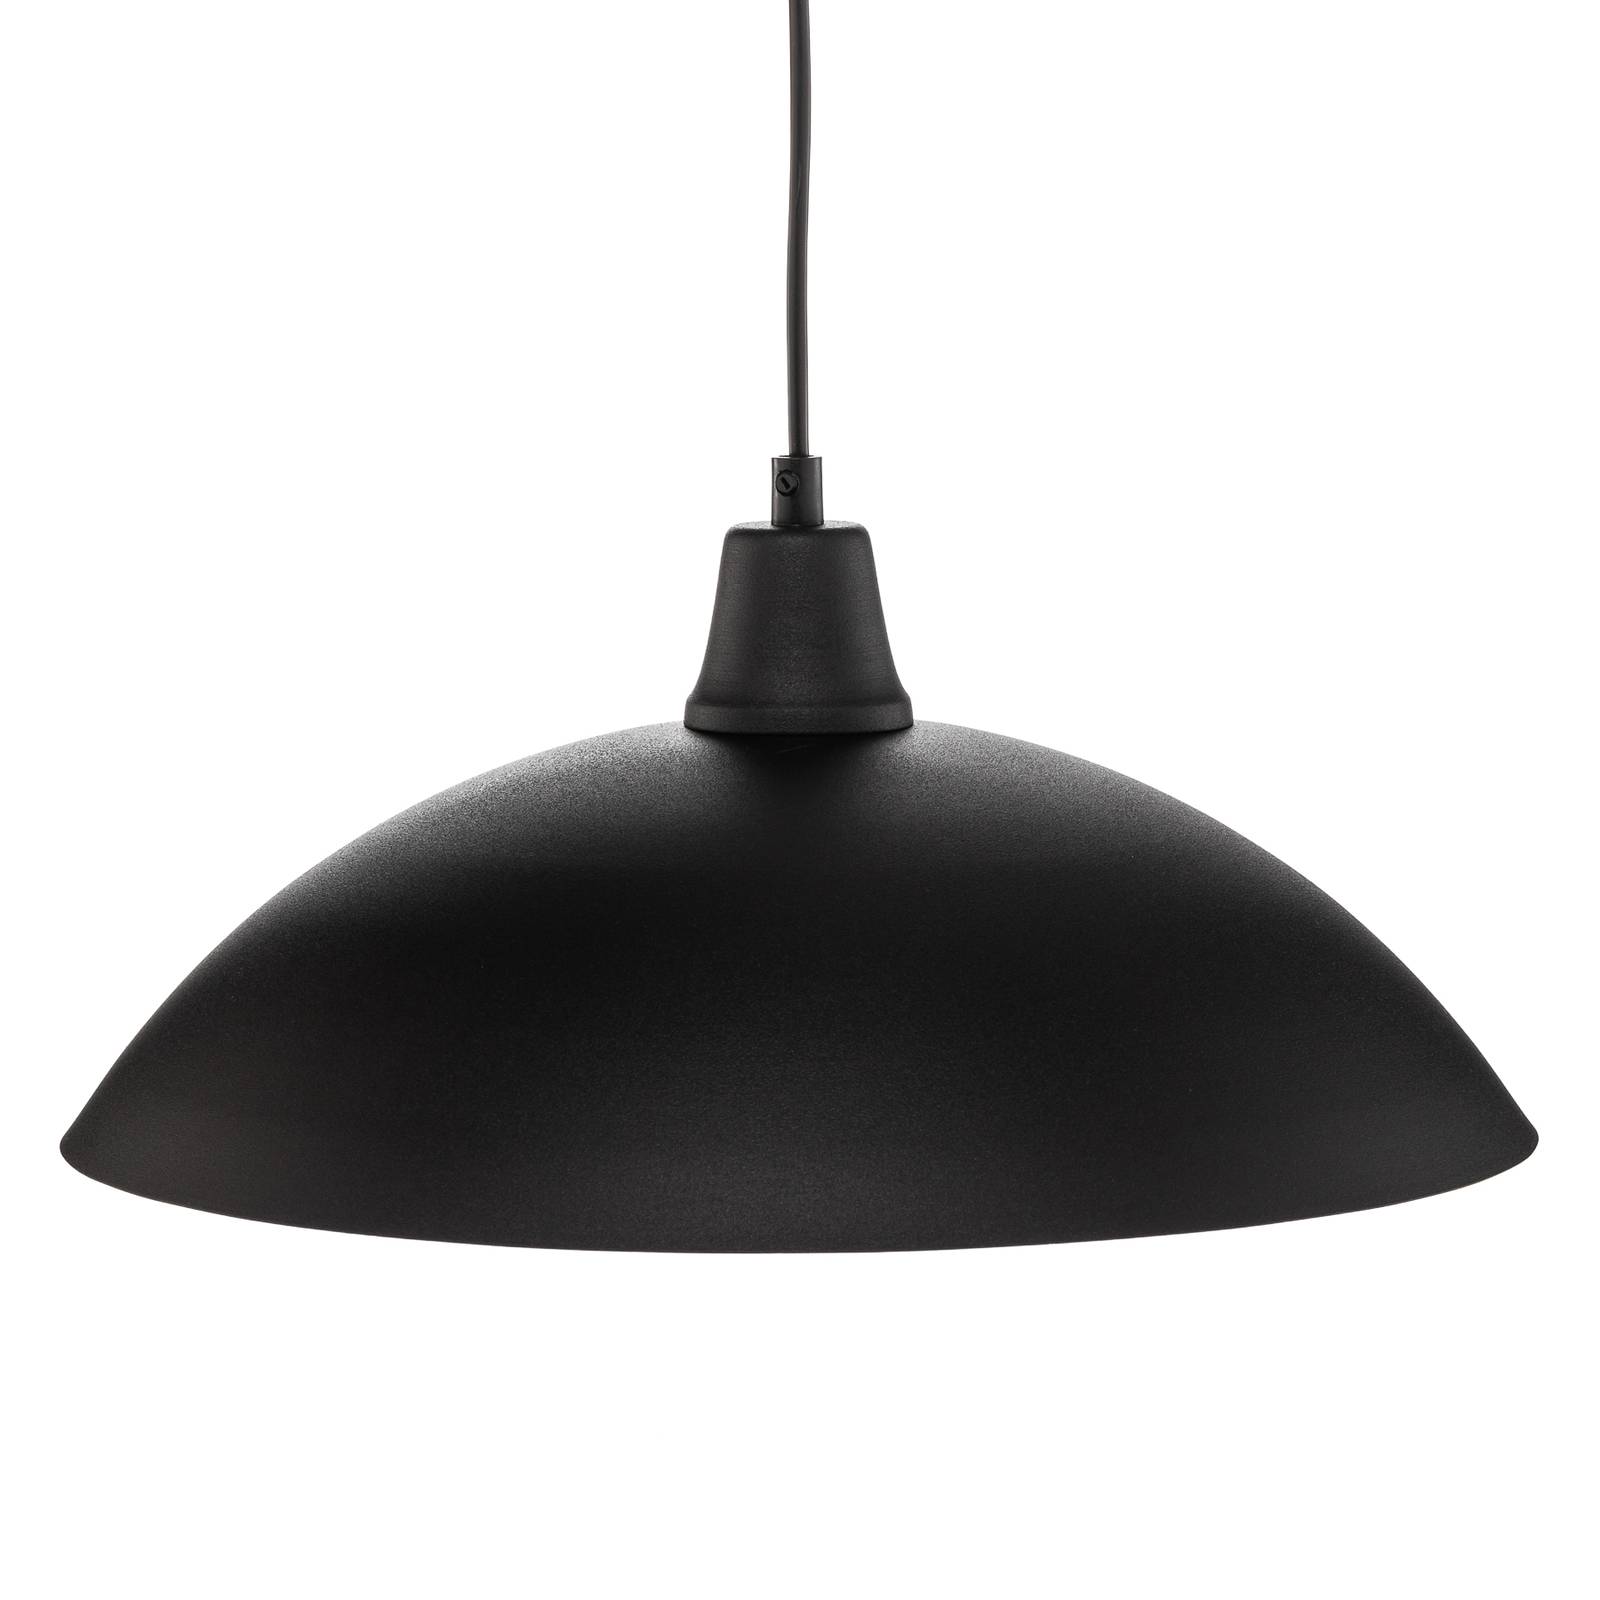 Hanglamp 901, in hoogte verstelbaar, zwart/wit